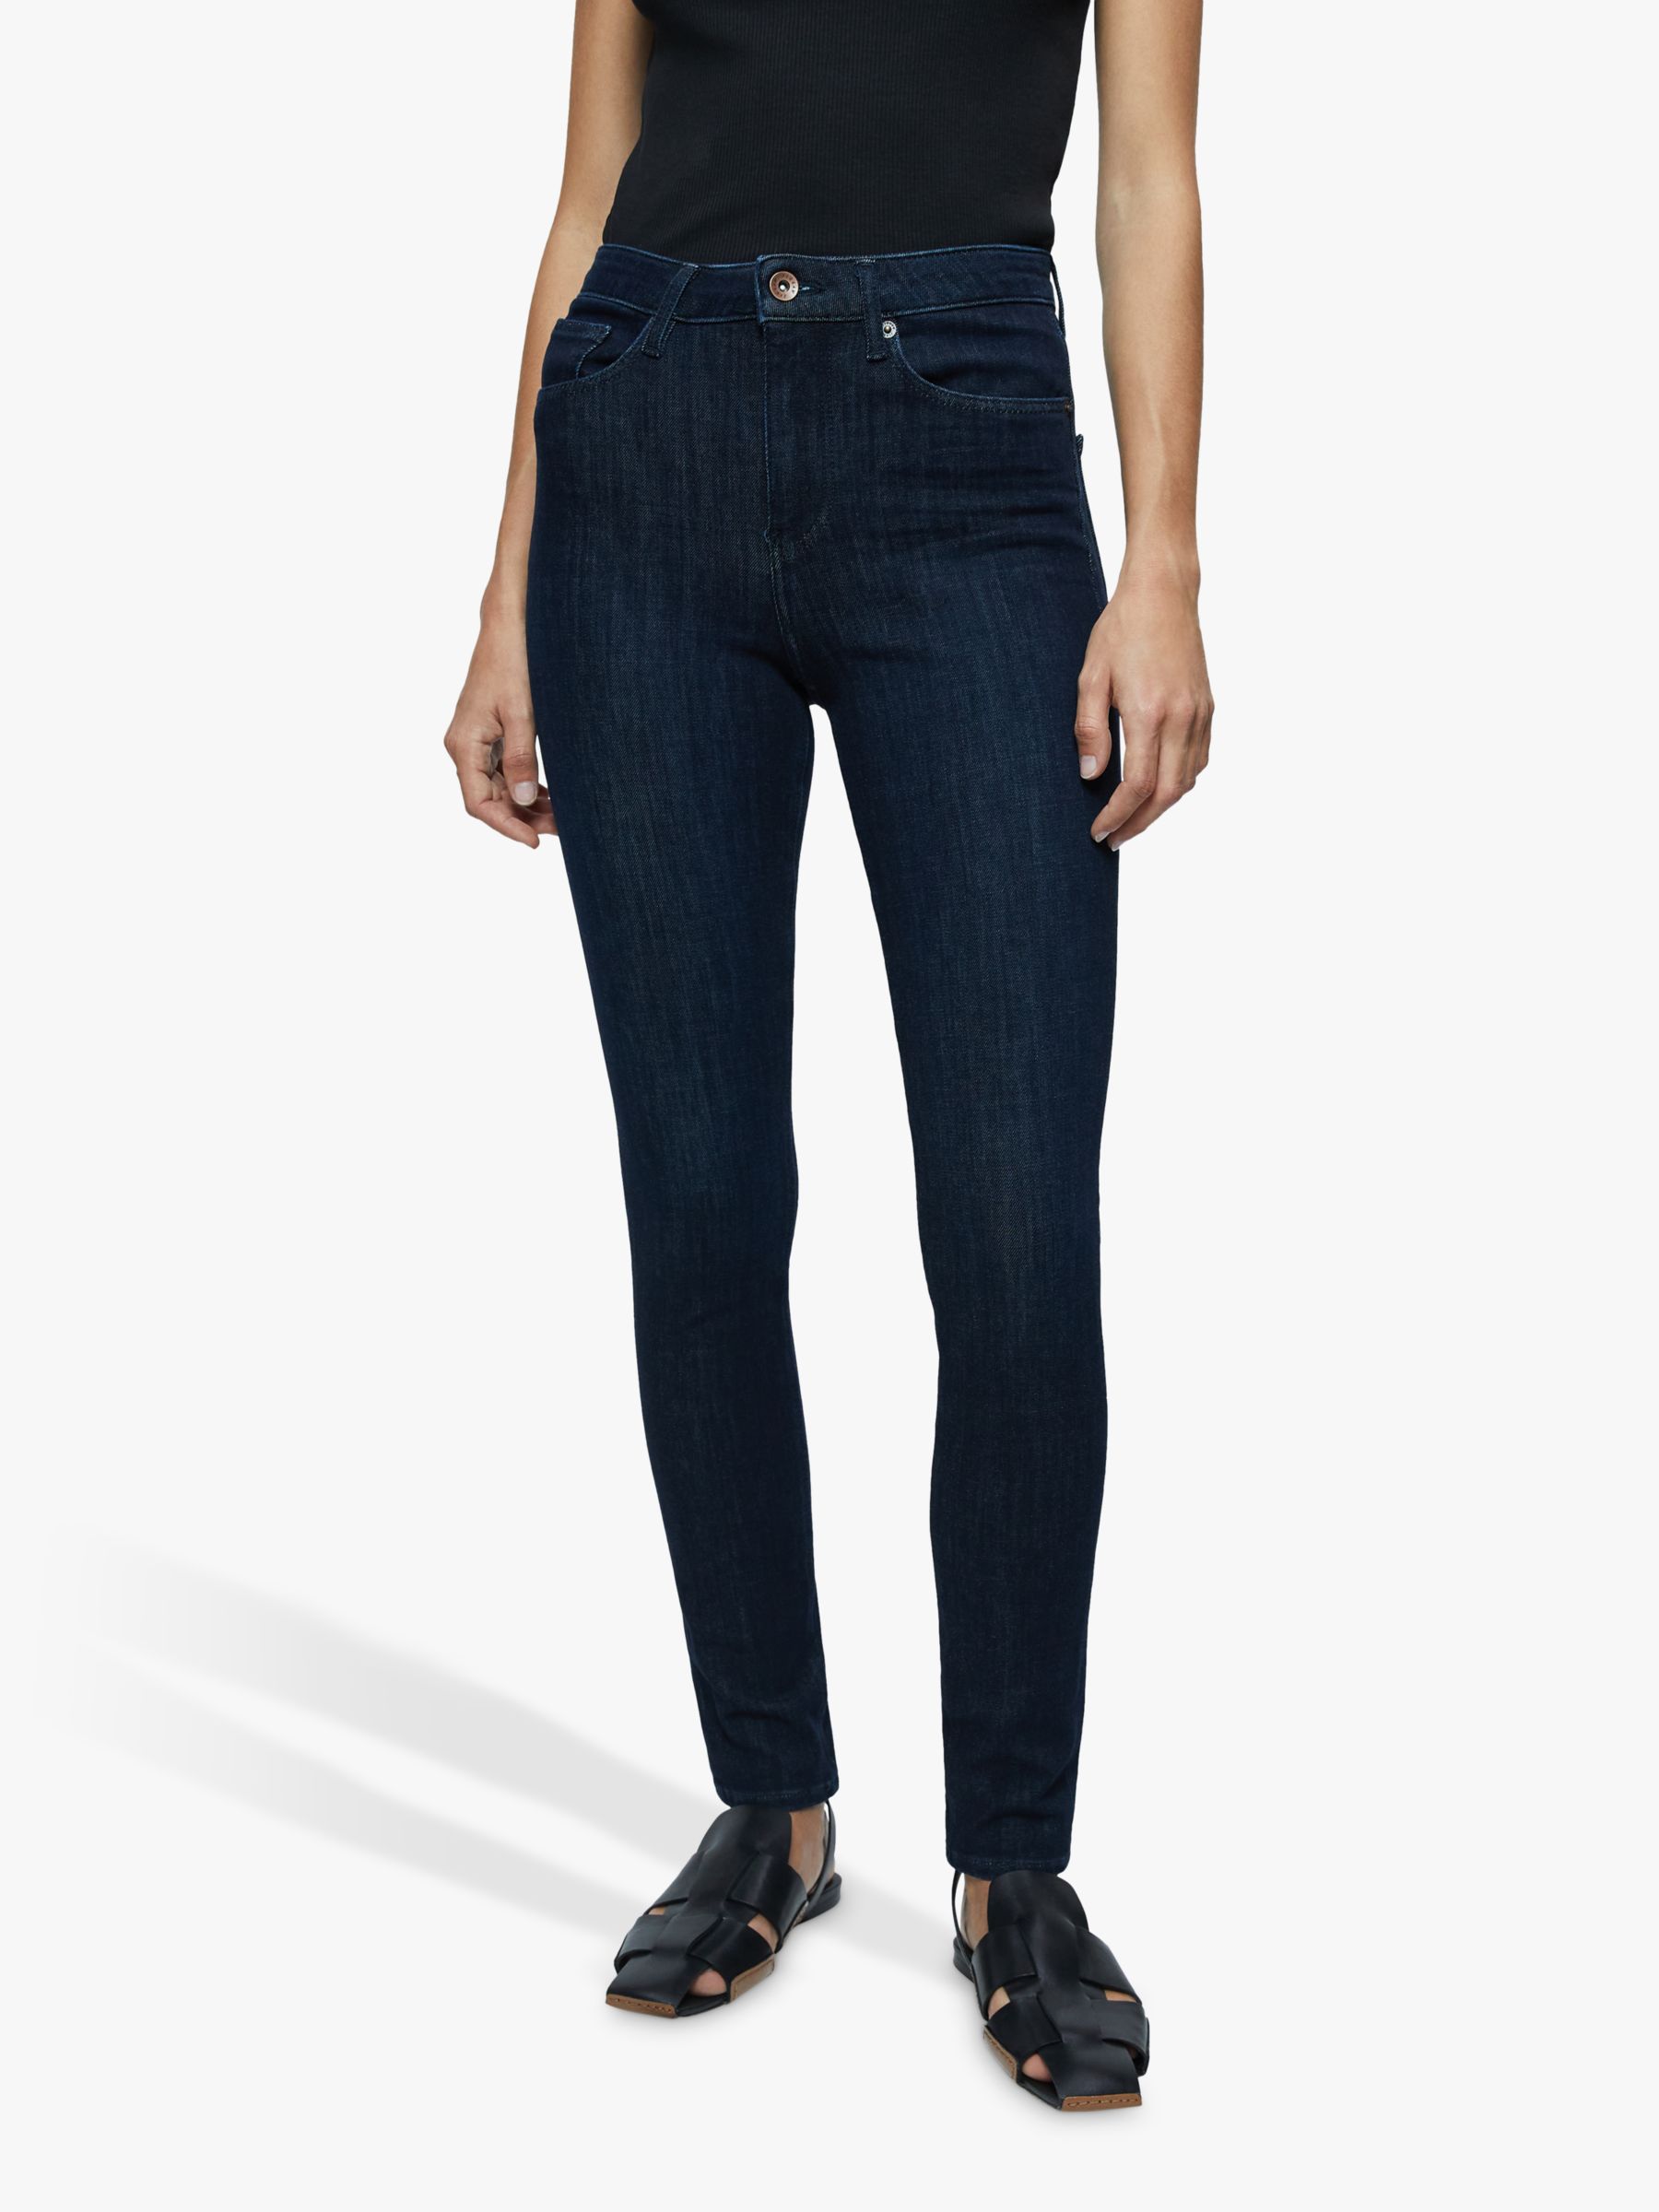 Jigsaw Richmond Skinny Jeans, Indigo, 24